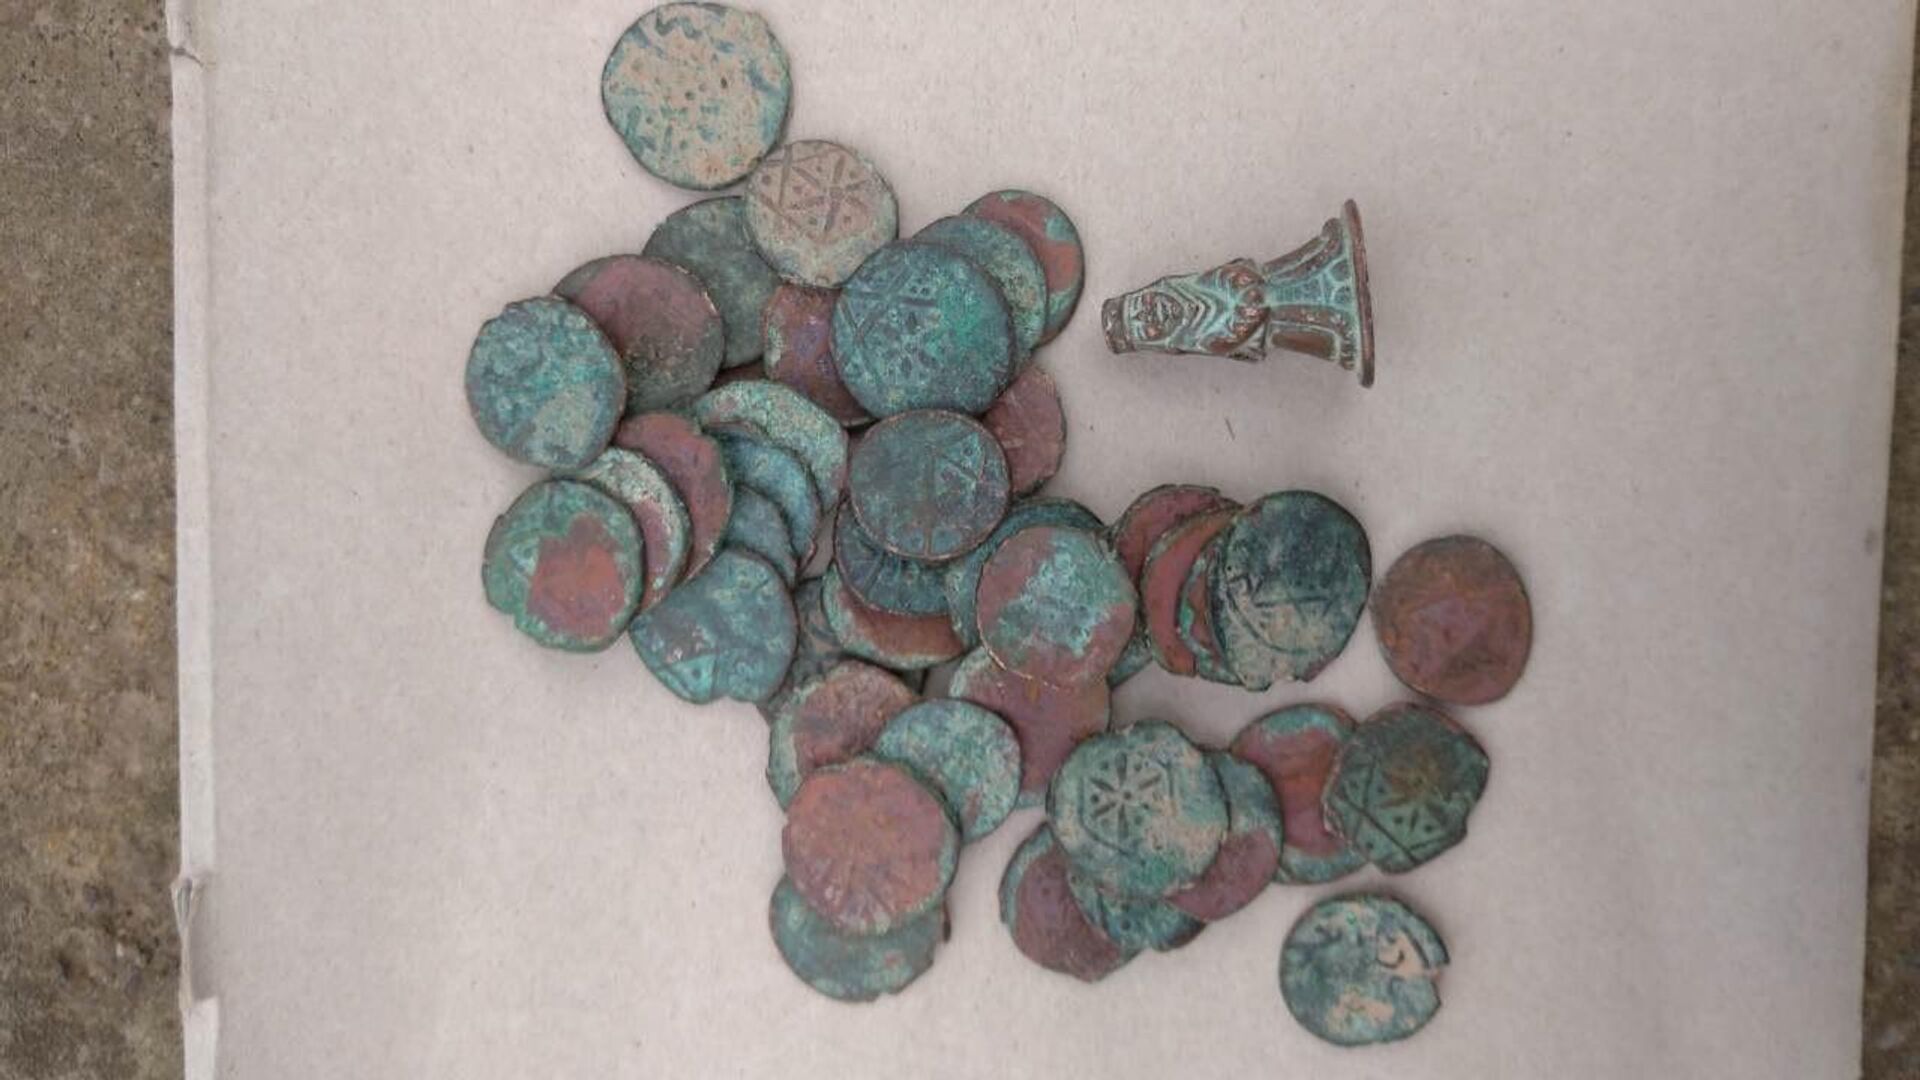 Монеты 15 века найденные местными жителями в Сурхандарье - Sputnik Узбекистан, 1920, 09.03.2022